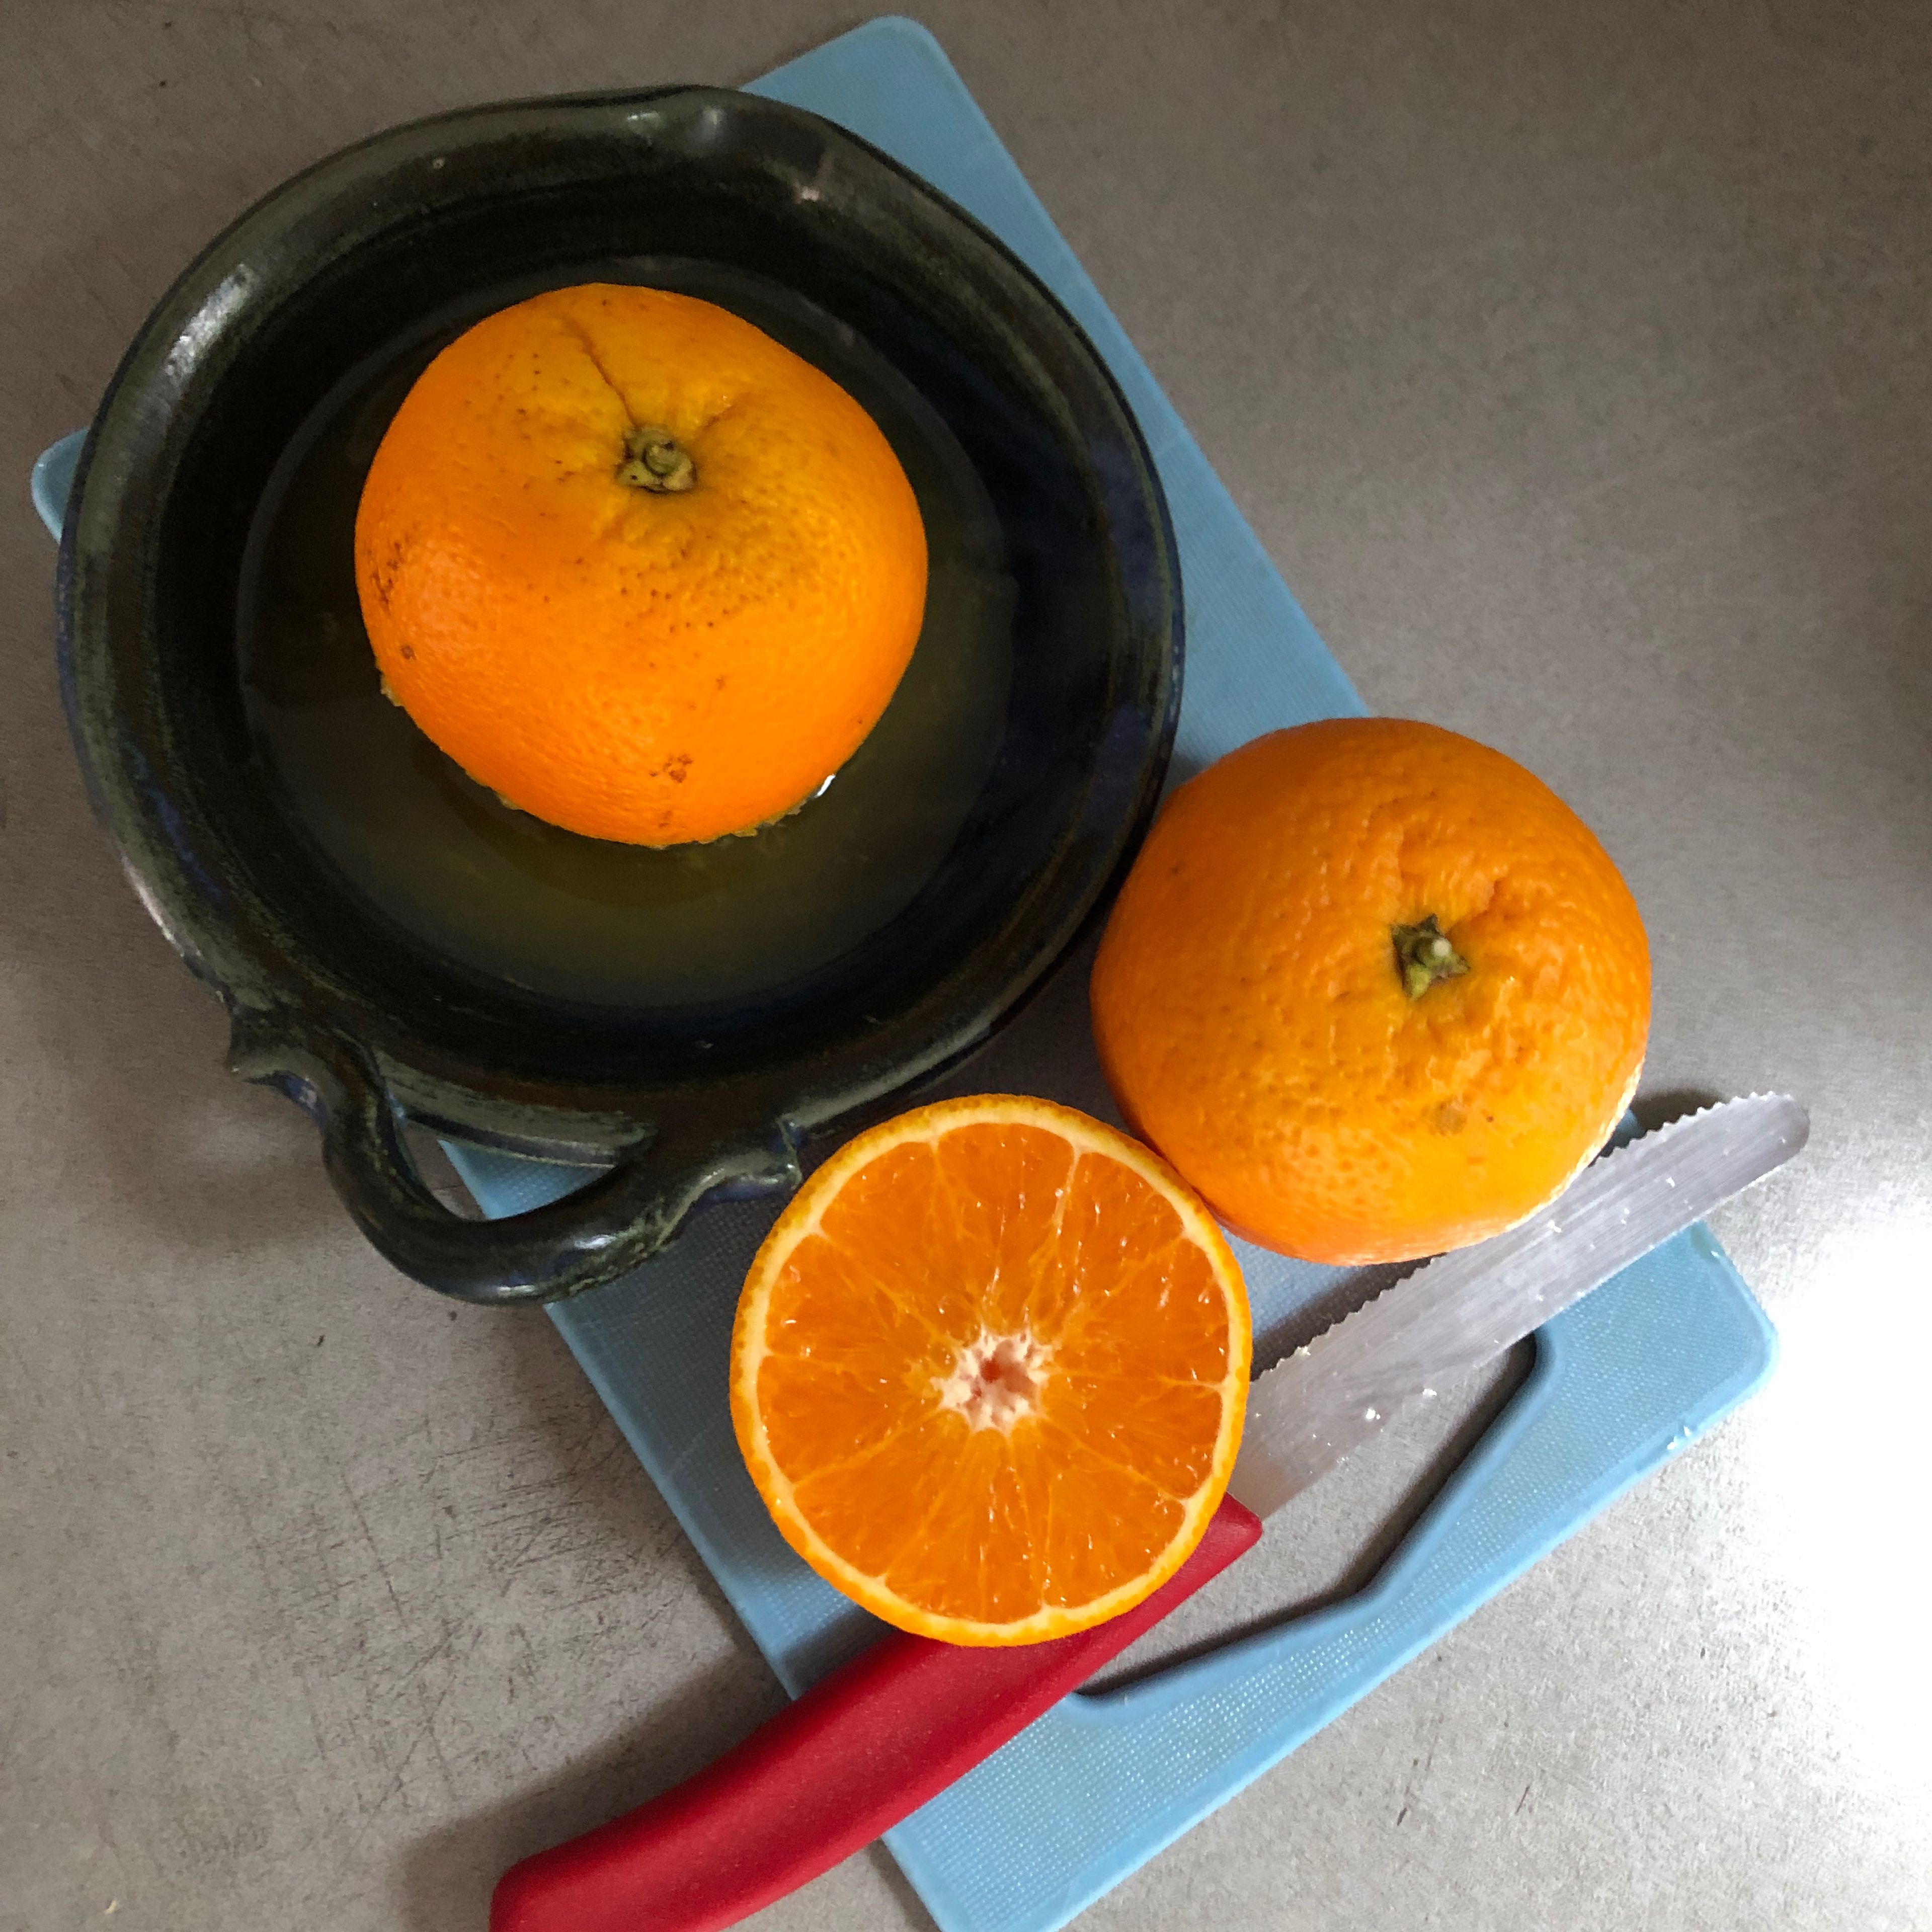 Die Orangenhälften auspressen und den Saft in eine Karaffe o.ä. füllen.